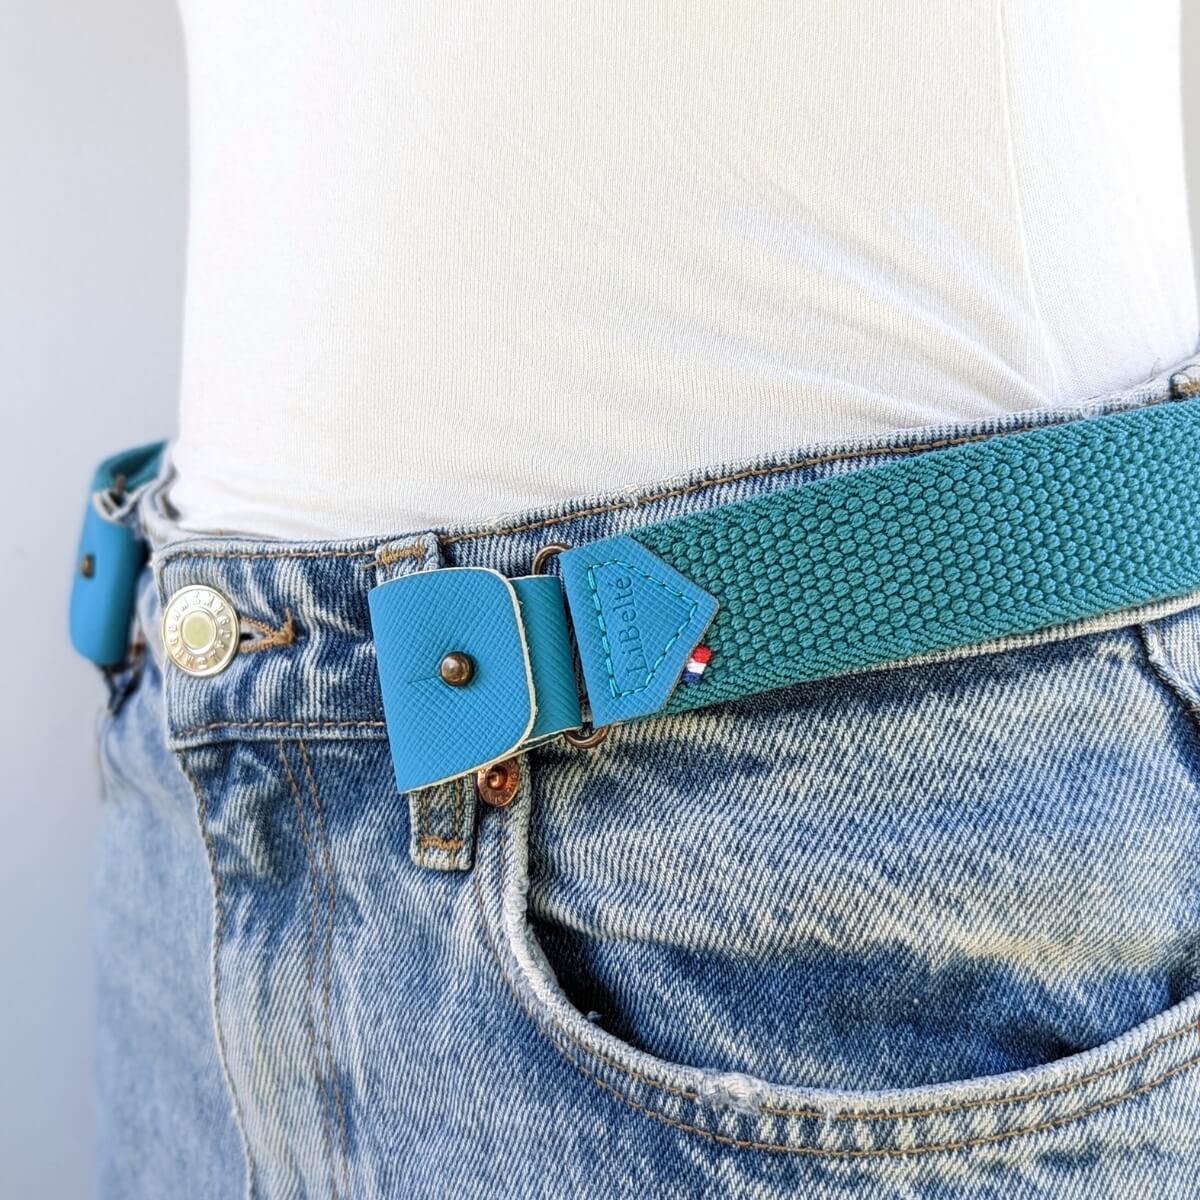 ceinture sans boucle couleur turquoise